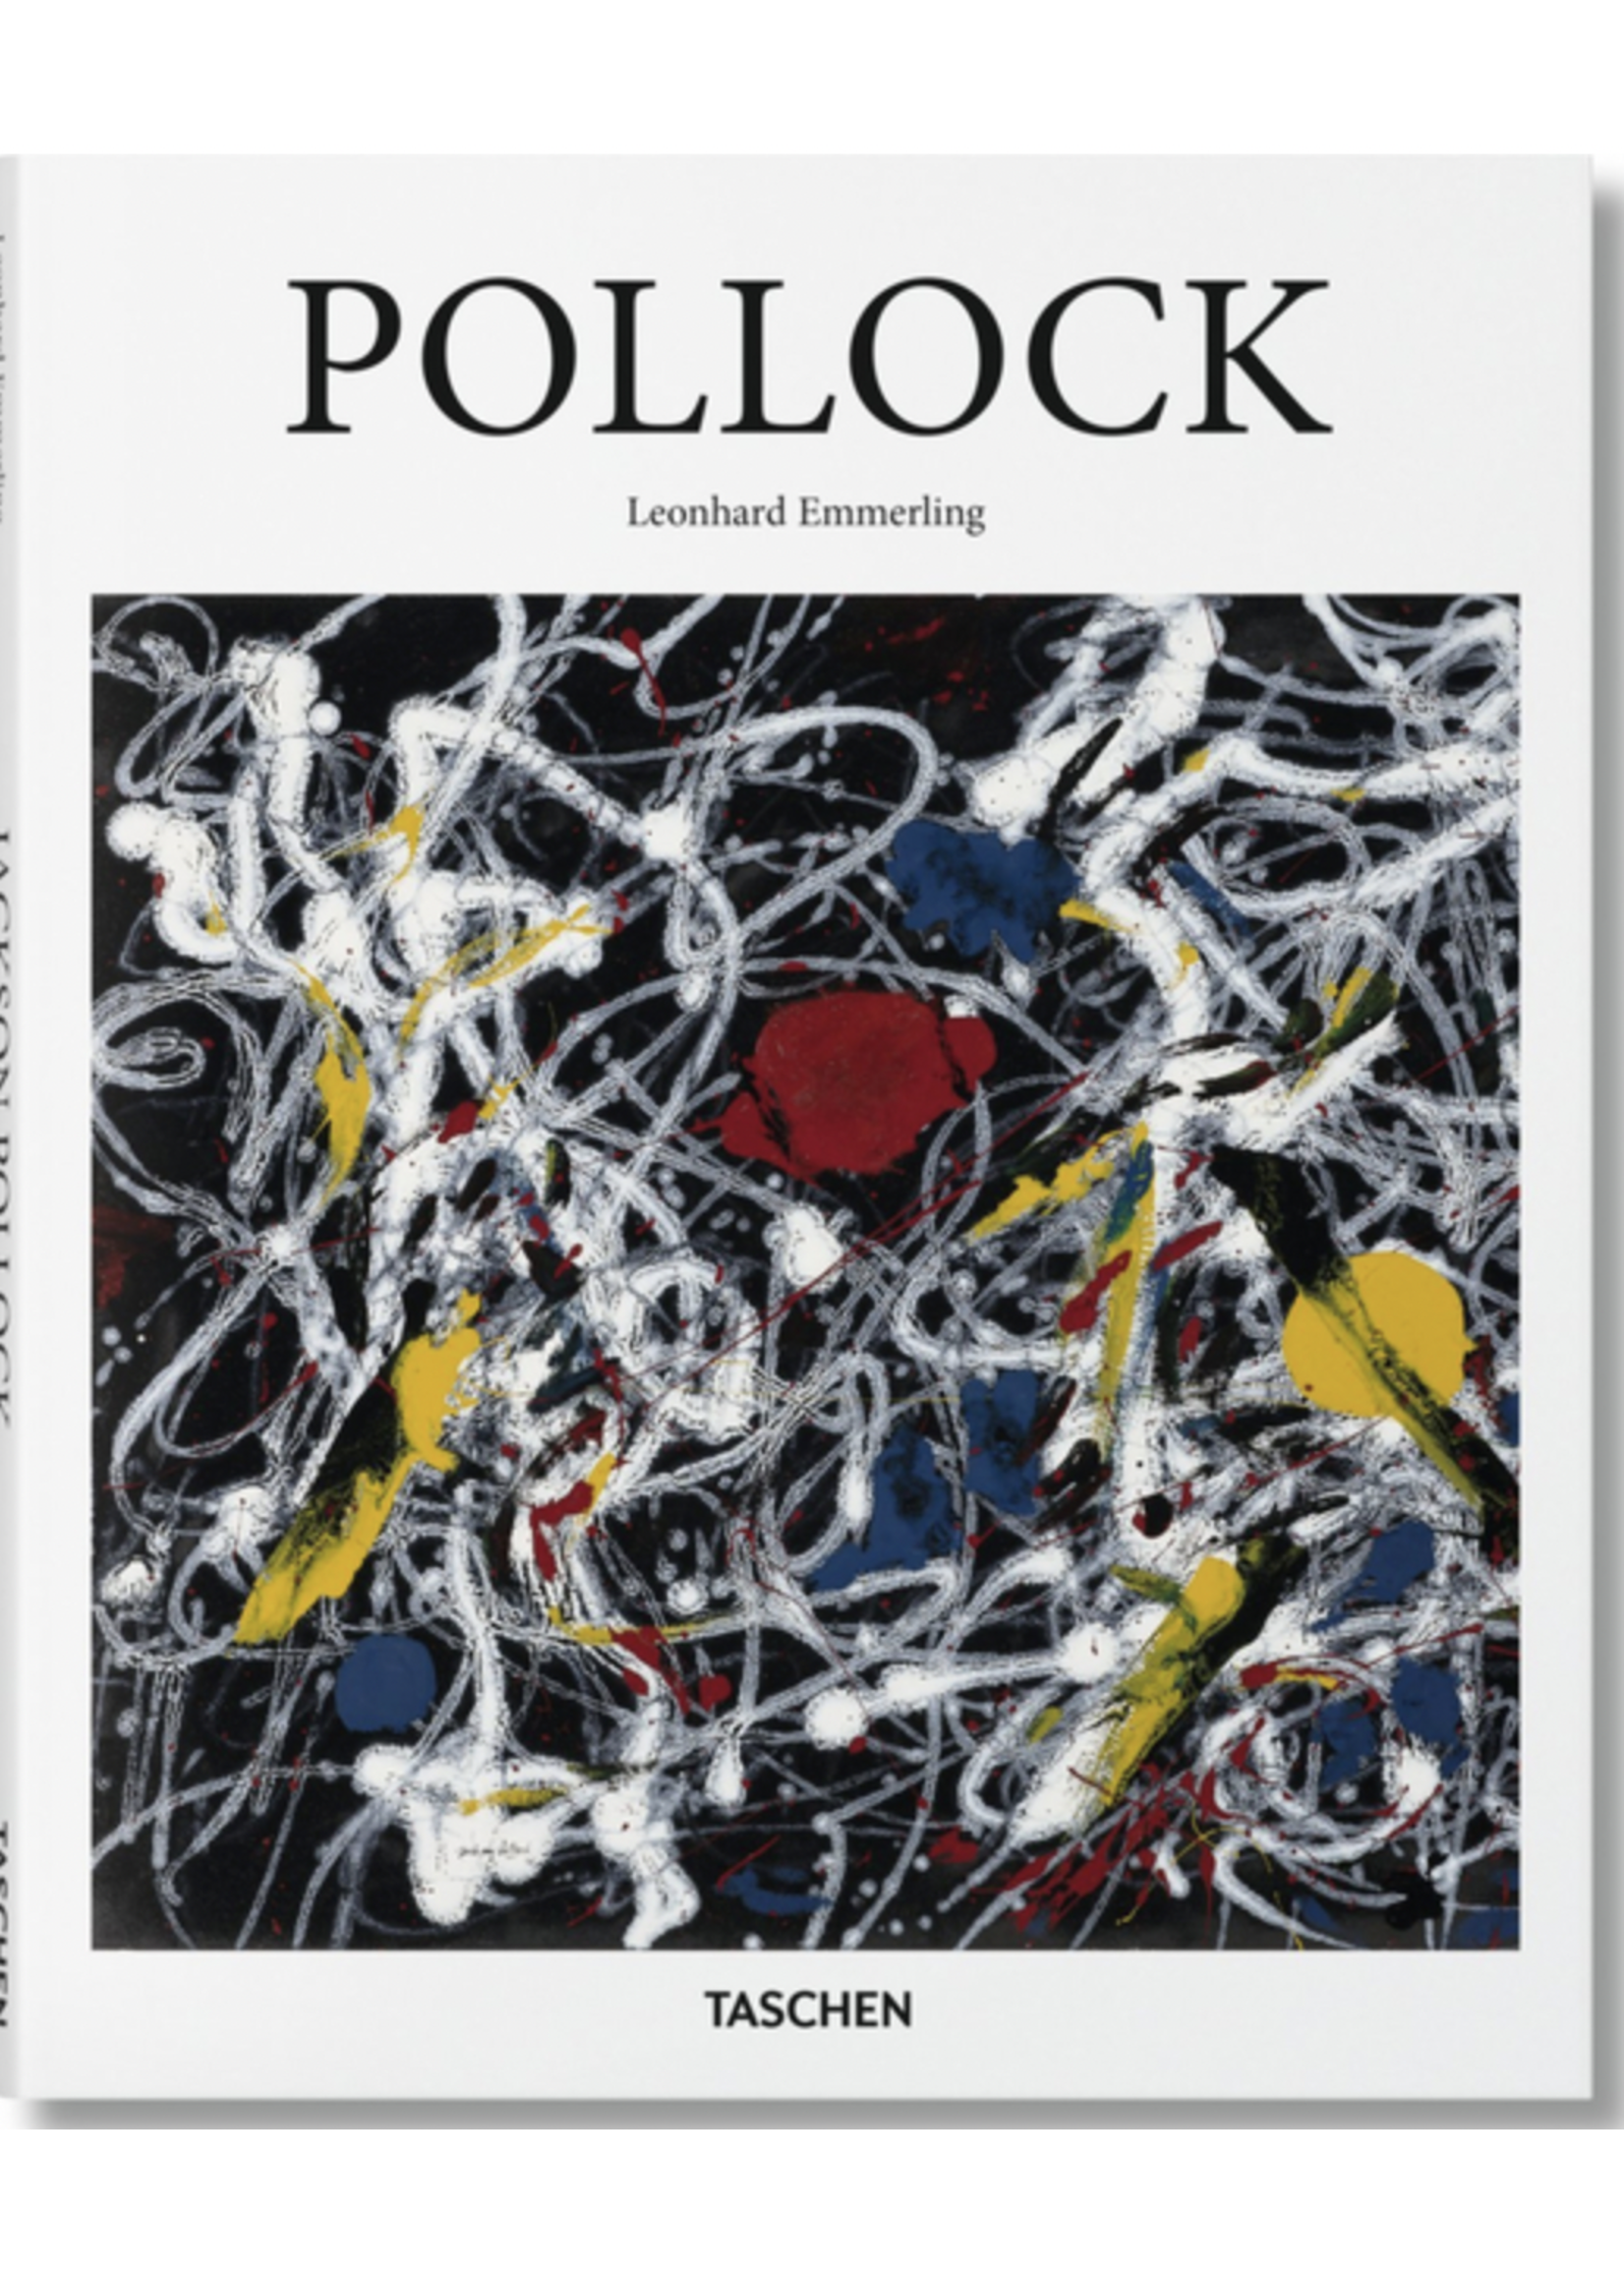 Taschen Books Pollock Art - Taschen